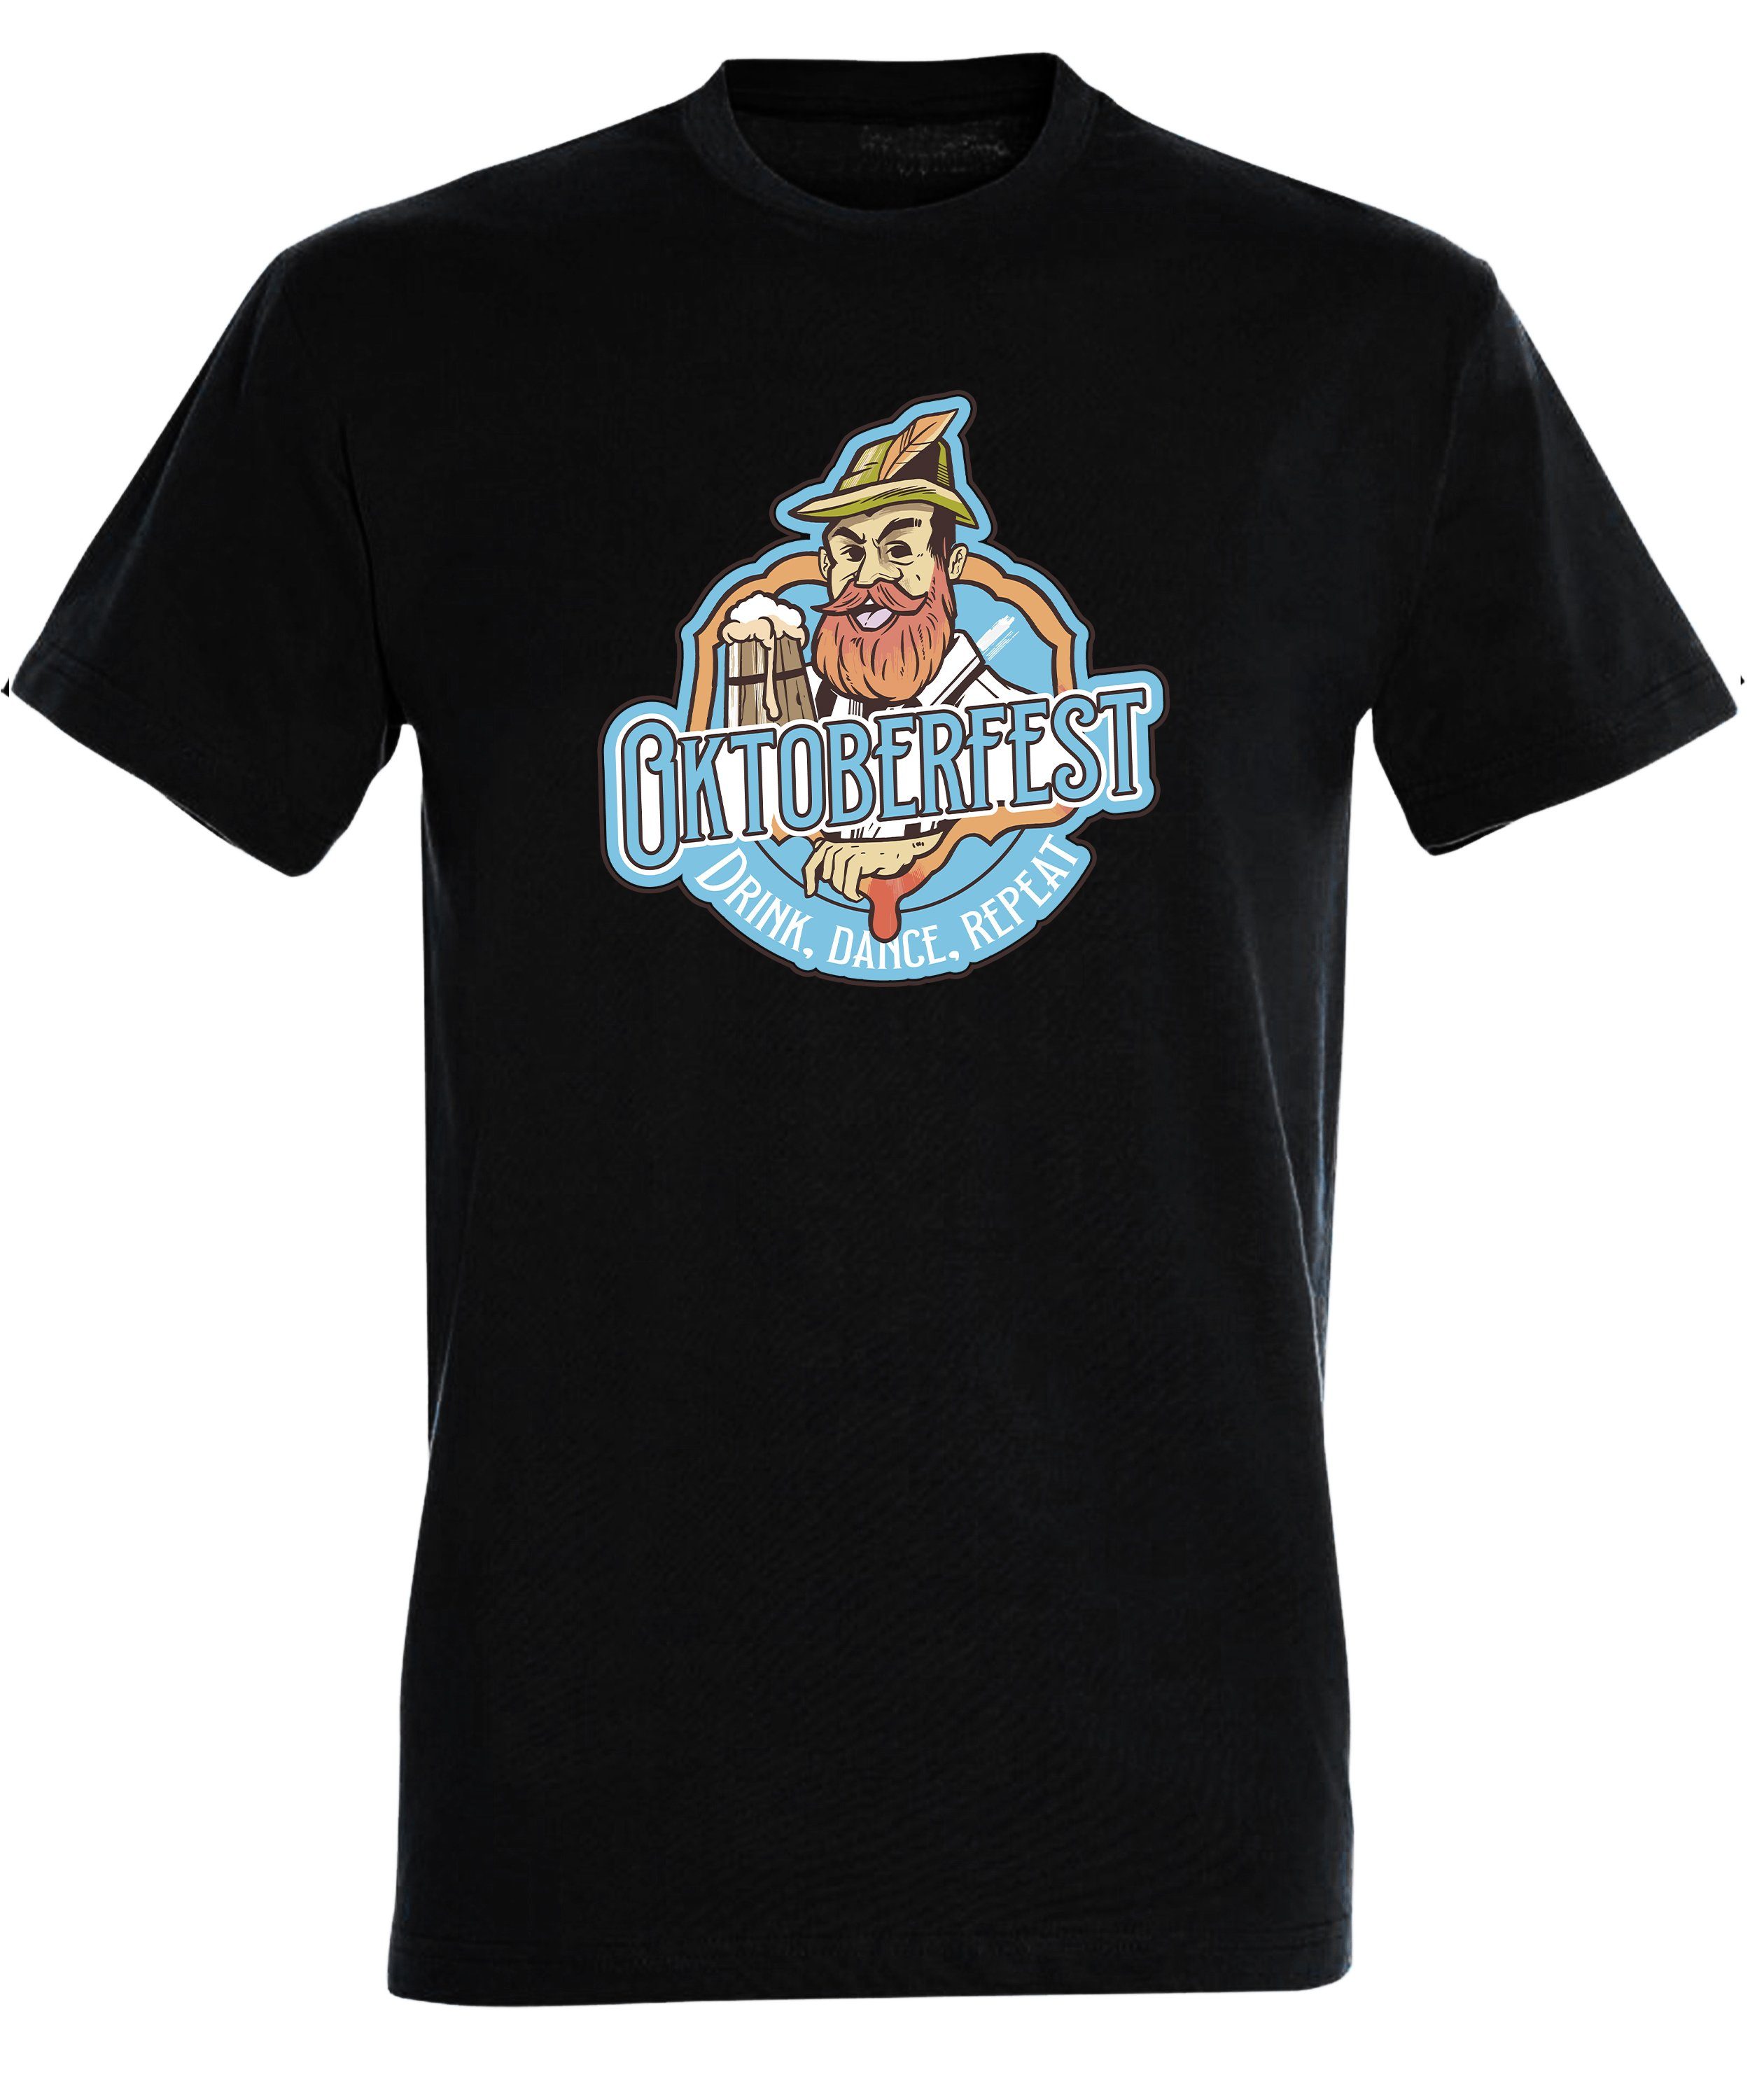 Oktoberfest Baumwollshirt schwarz MyDesign24 mit Fun - Trinkshirt T-Shirt Regular i318 Shirt T-Shirt Aufdruck Print Fit, Herren